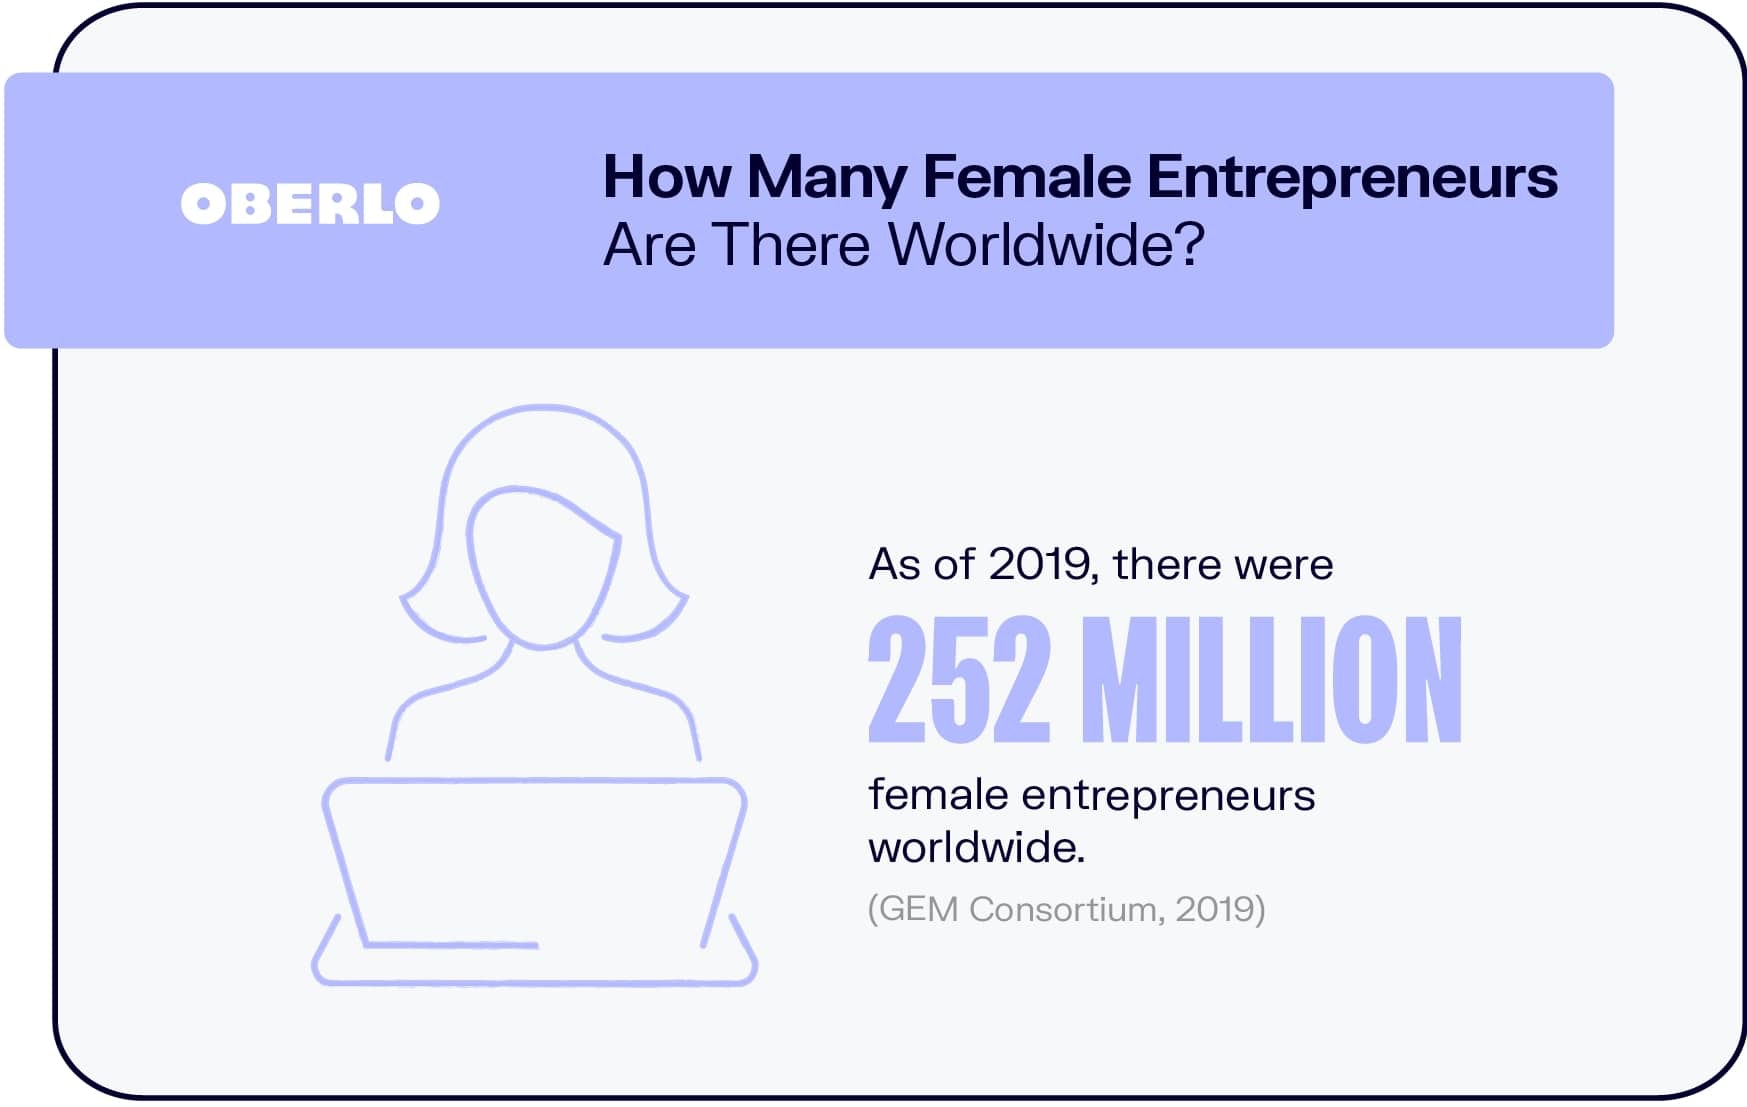 ¿Cuántas mujeres emprendedoras hay en el mundo?